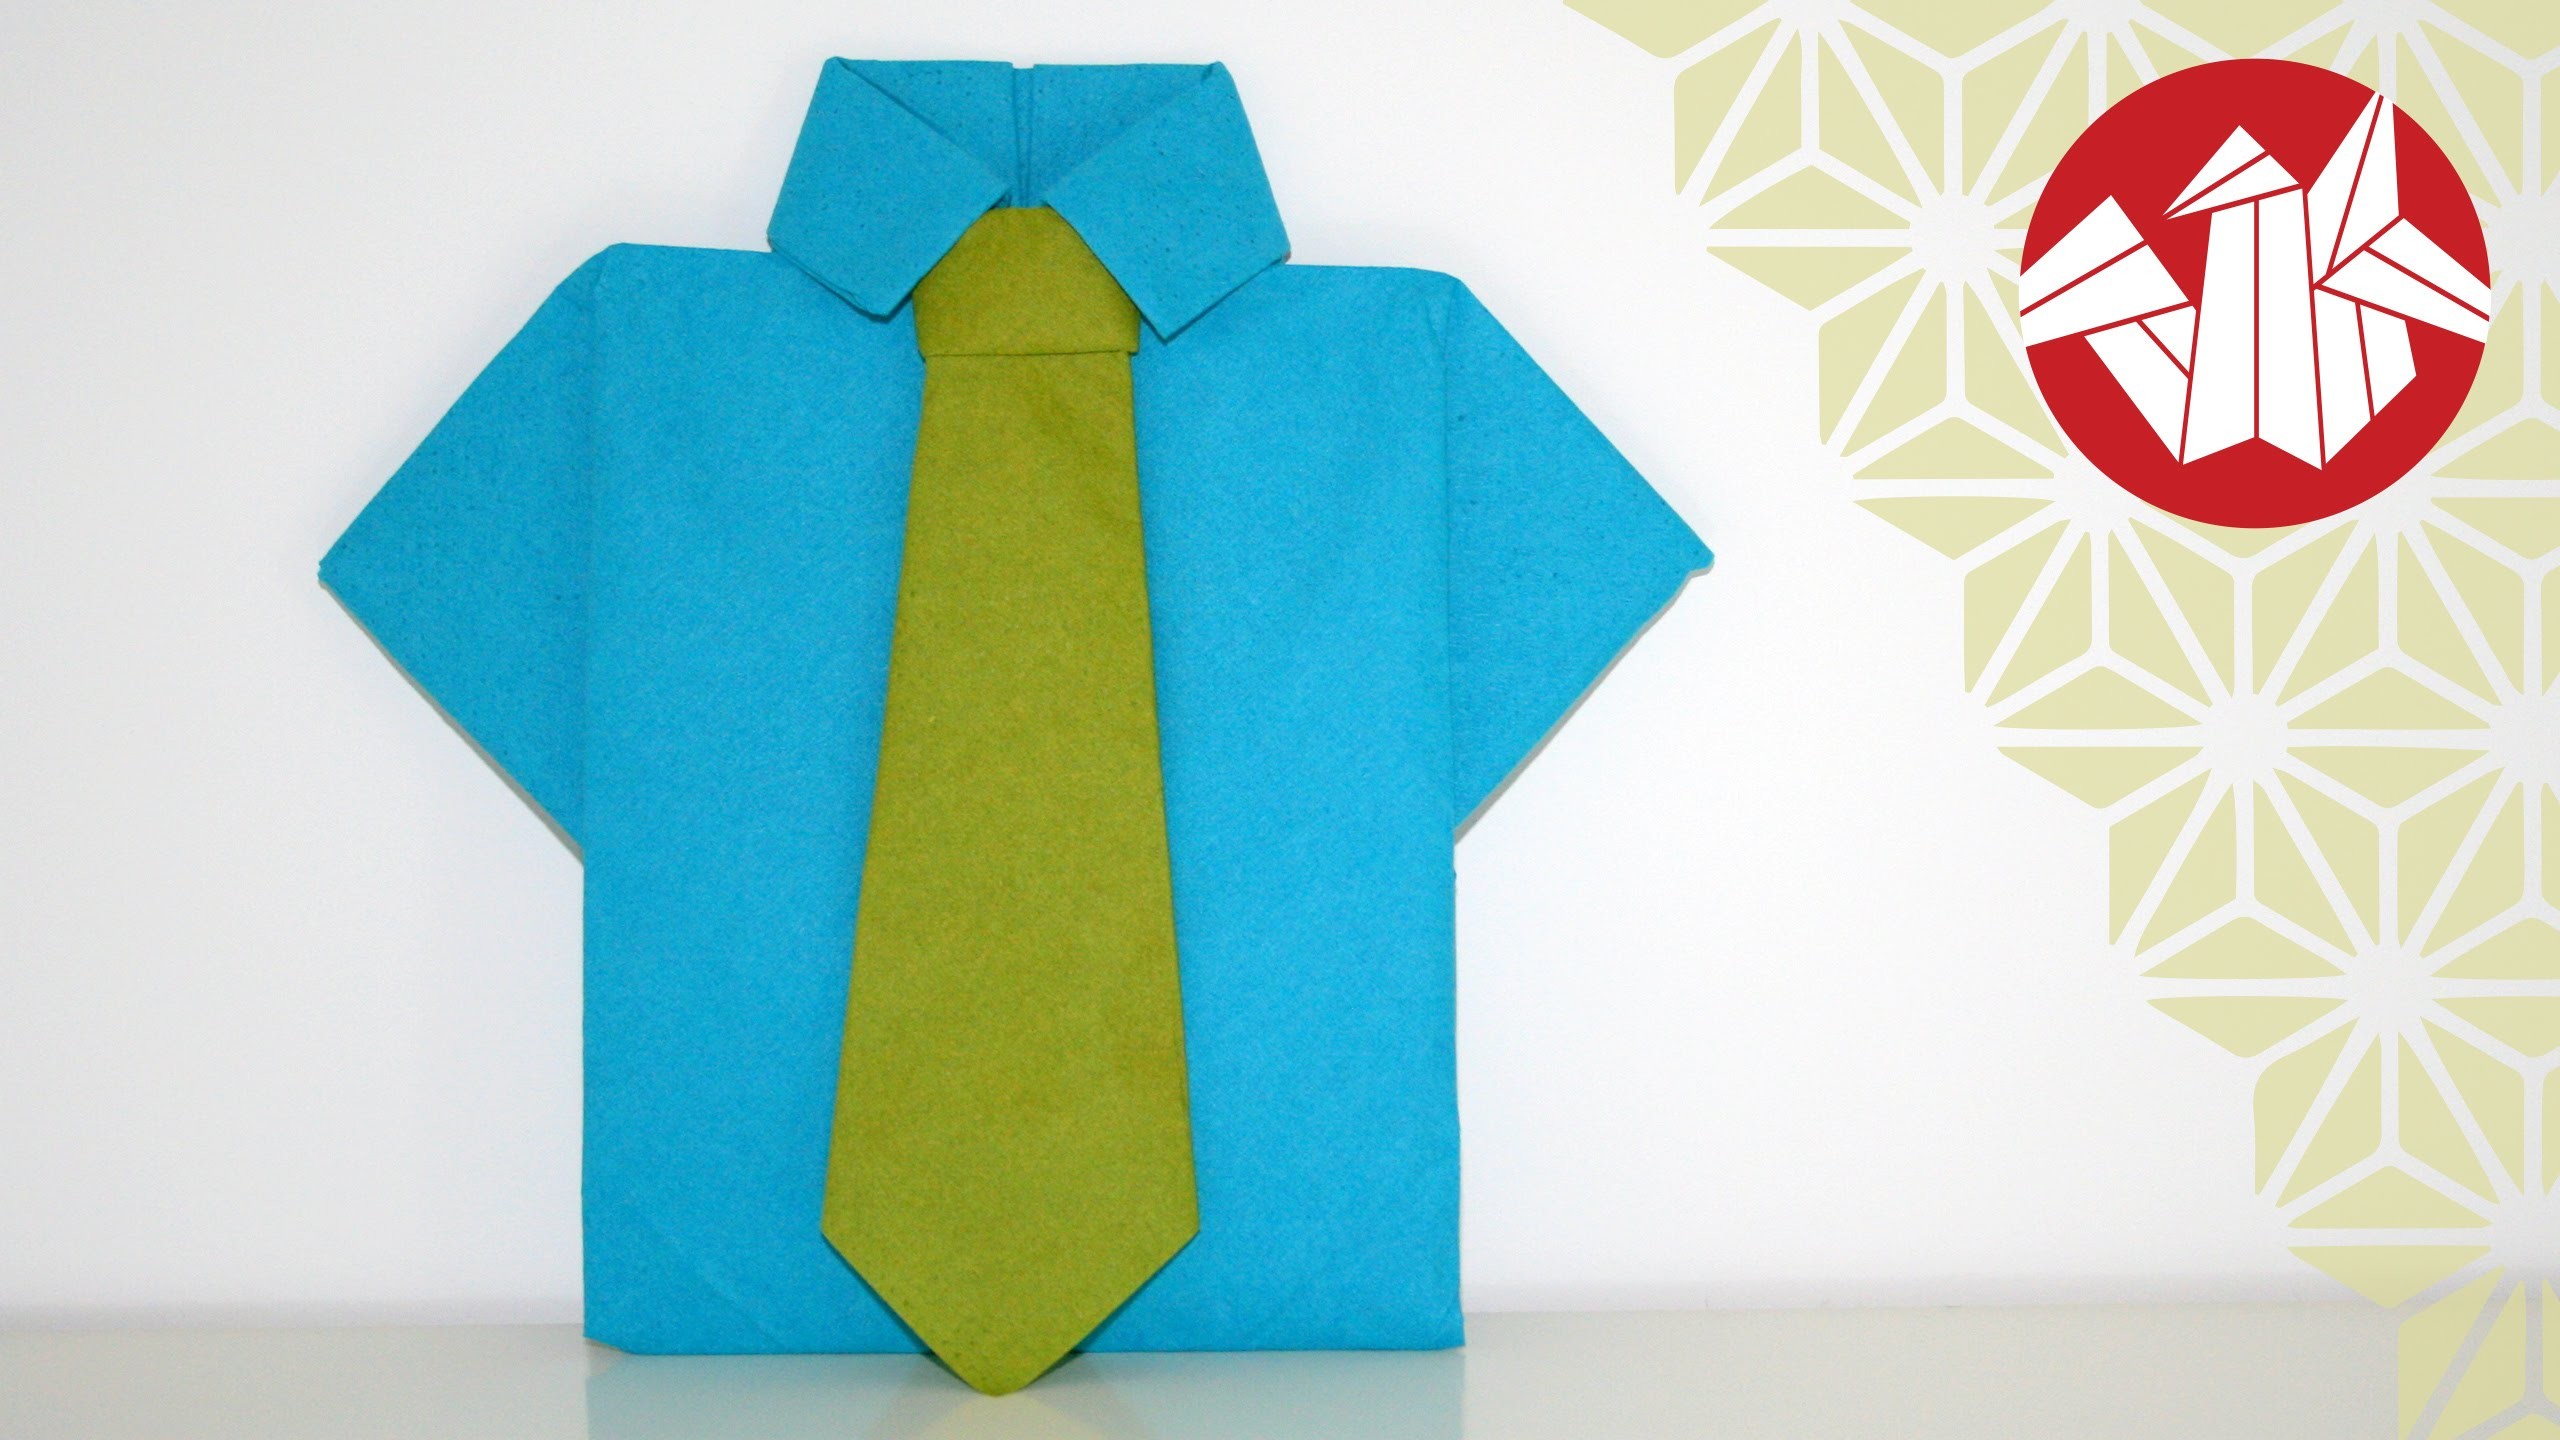 Tuto Origami - Chemise et cravate en serviette [Senbazuru]